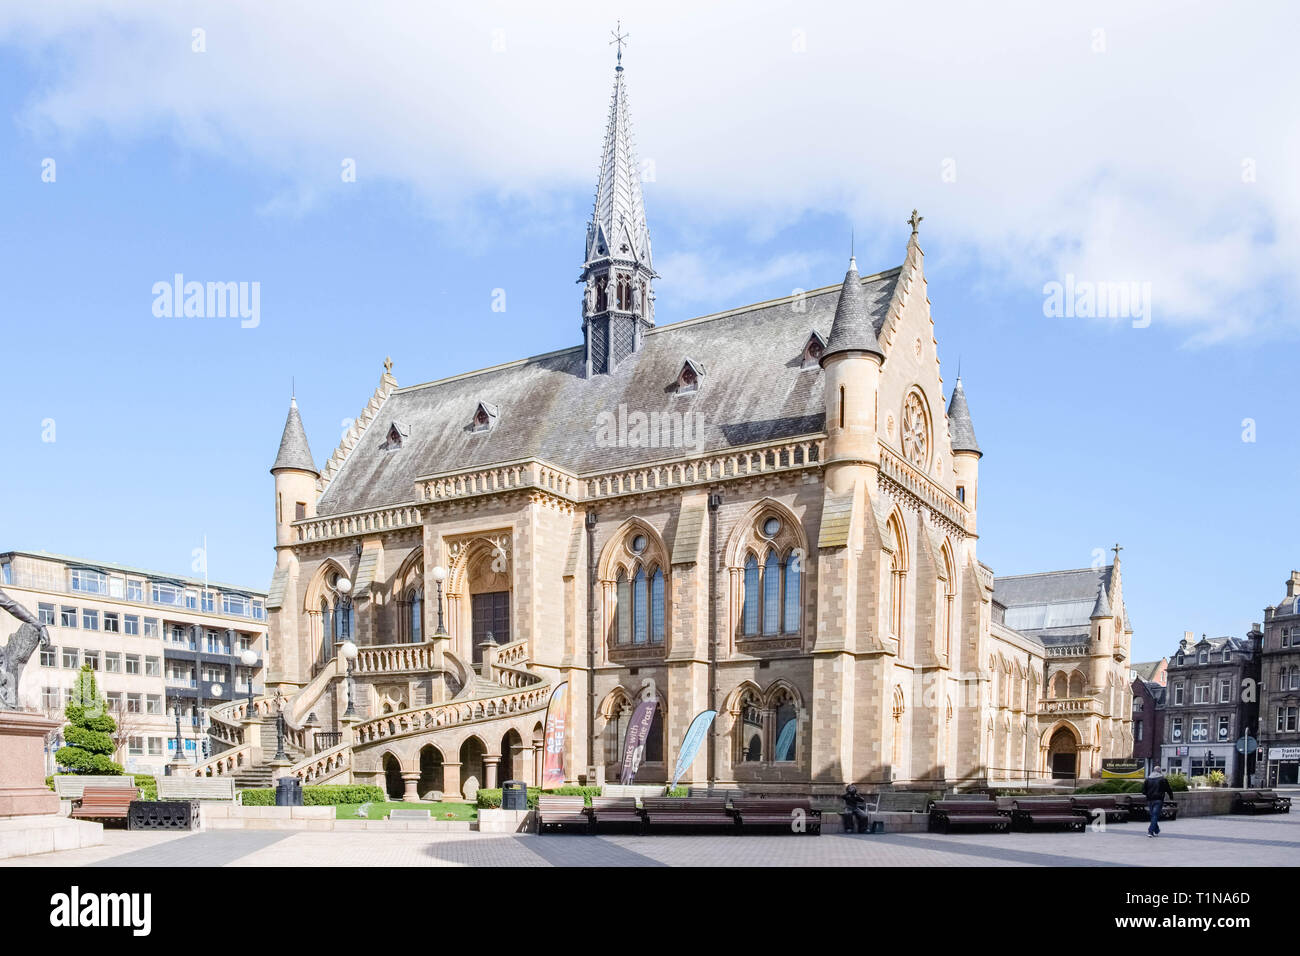 Dundee, Schottland, Großbritannien, 23. März 2019: Einige der eindrucksvollen Architektur in Dundee mit der McManus Kunstgalerie und Museum im Zentrum von Stockfoto